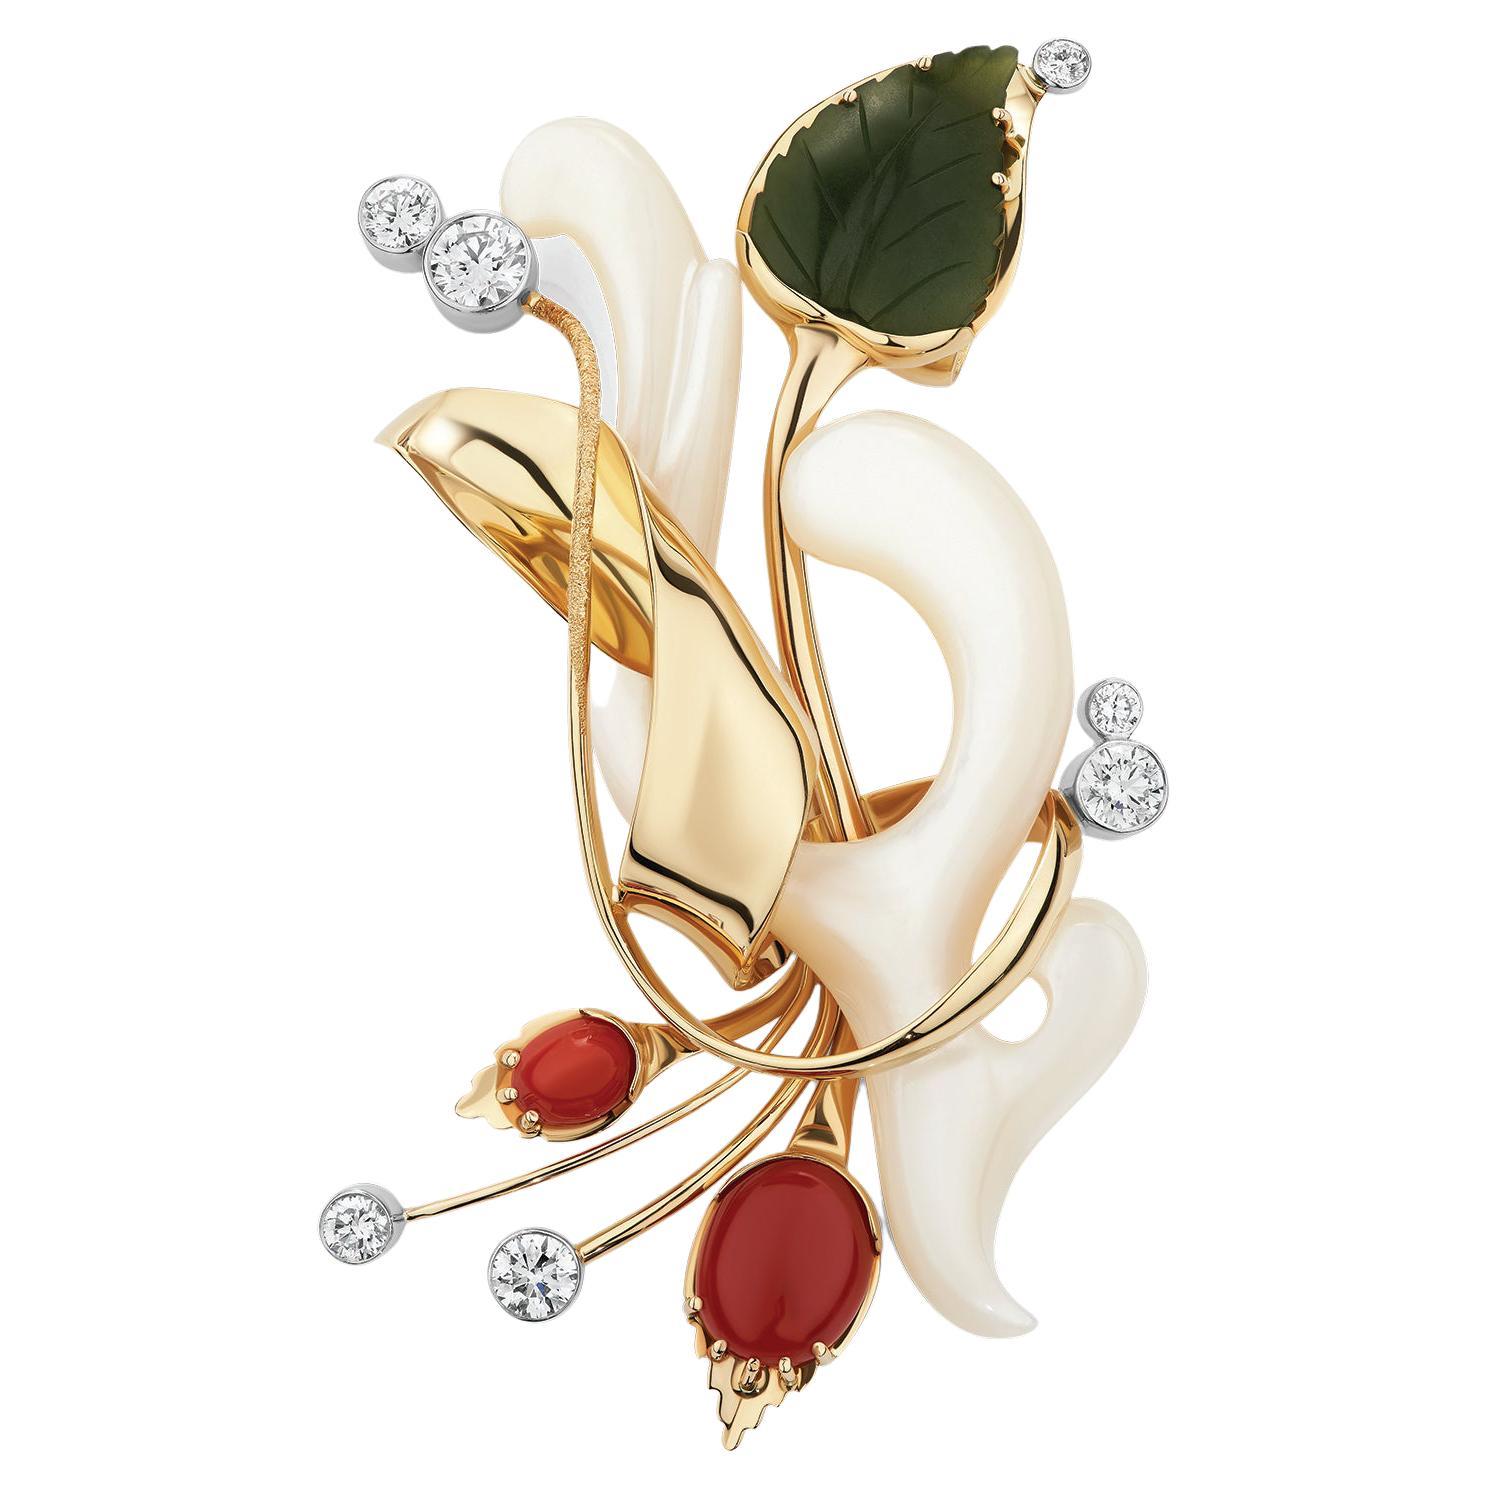 Paul Amey Pendentif « feuille » en or 18 carats, jade, corail rouge naturel et diamants, fabriqué à la main